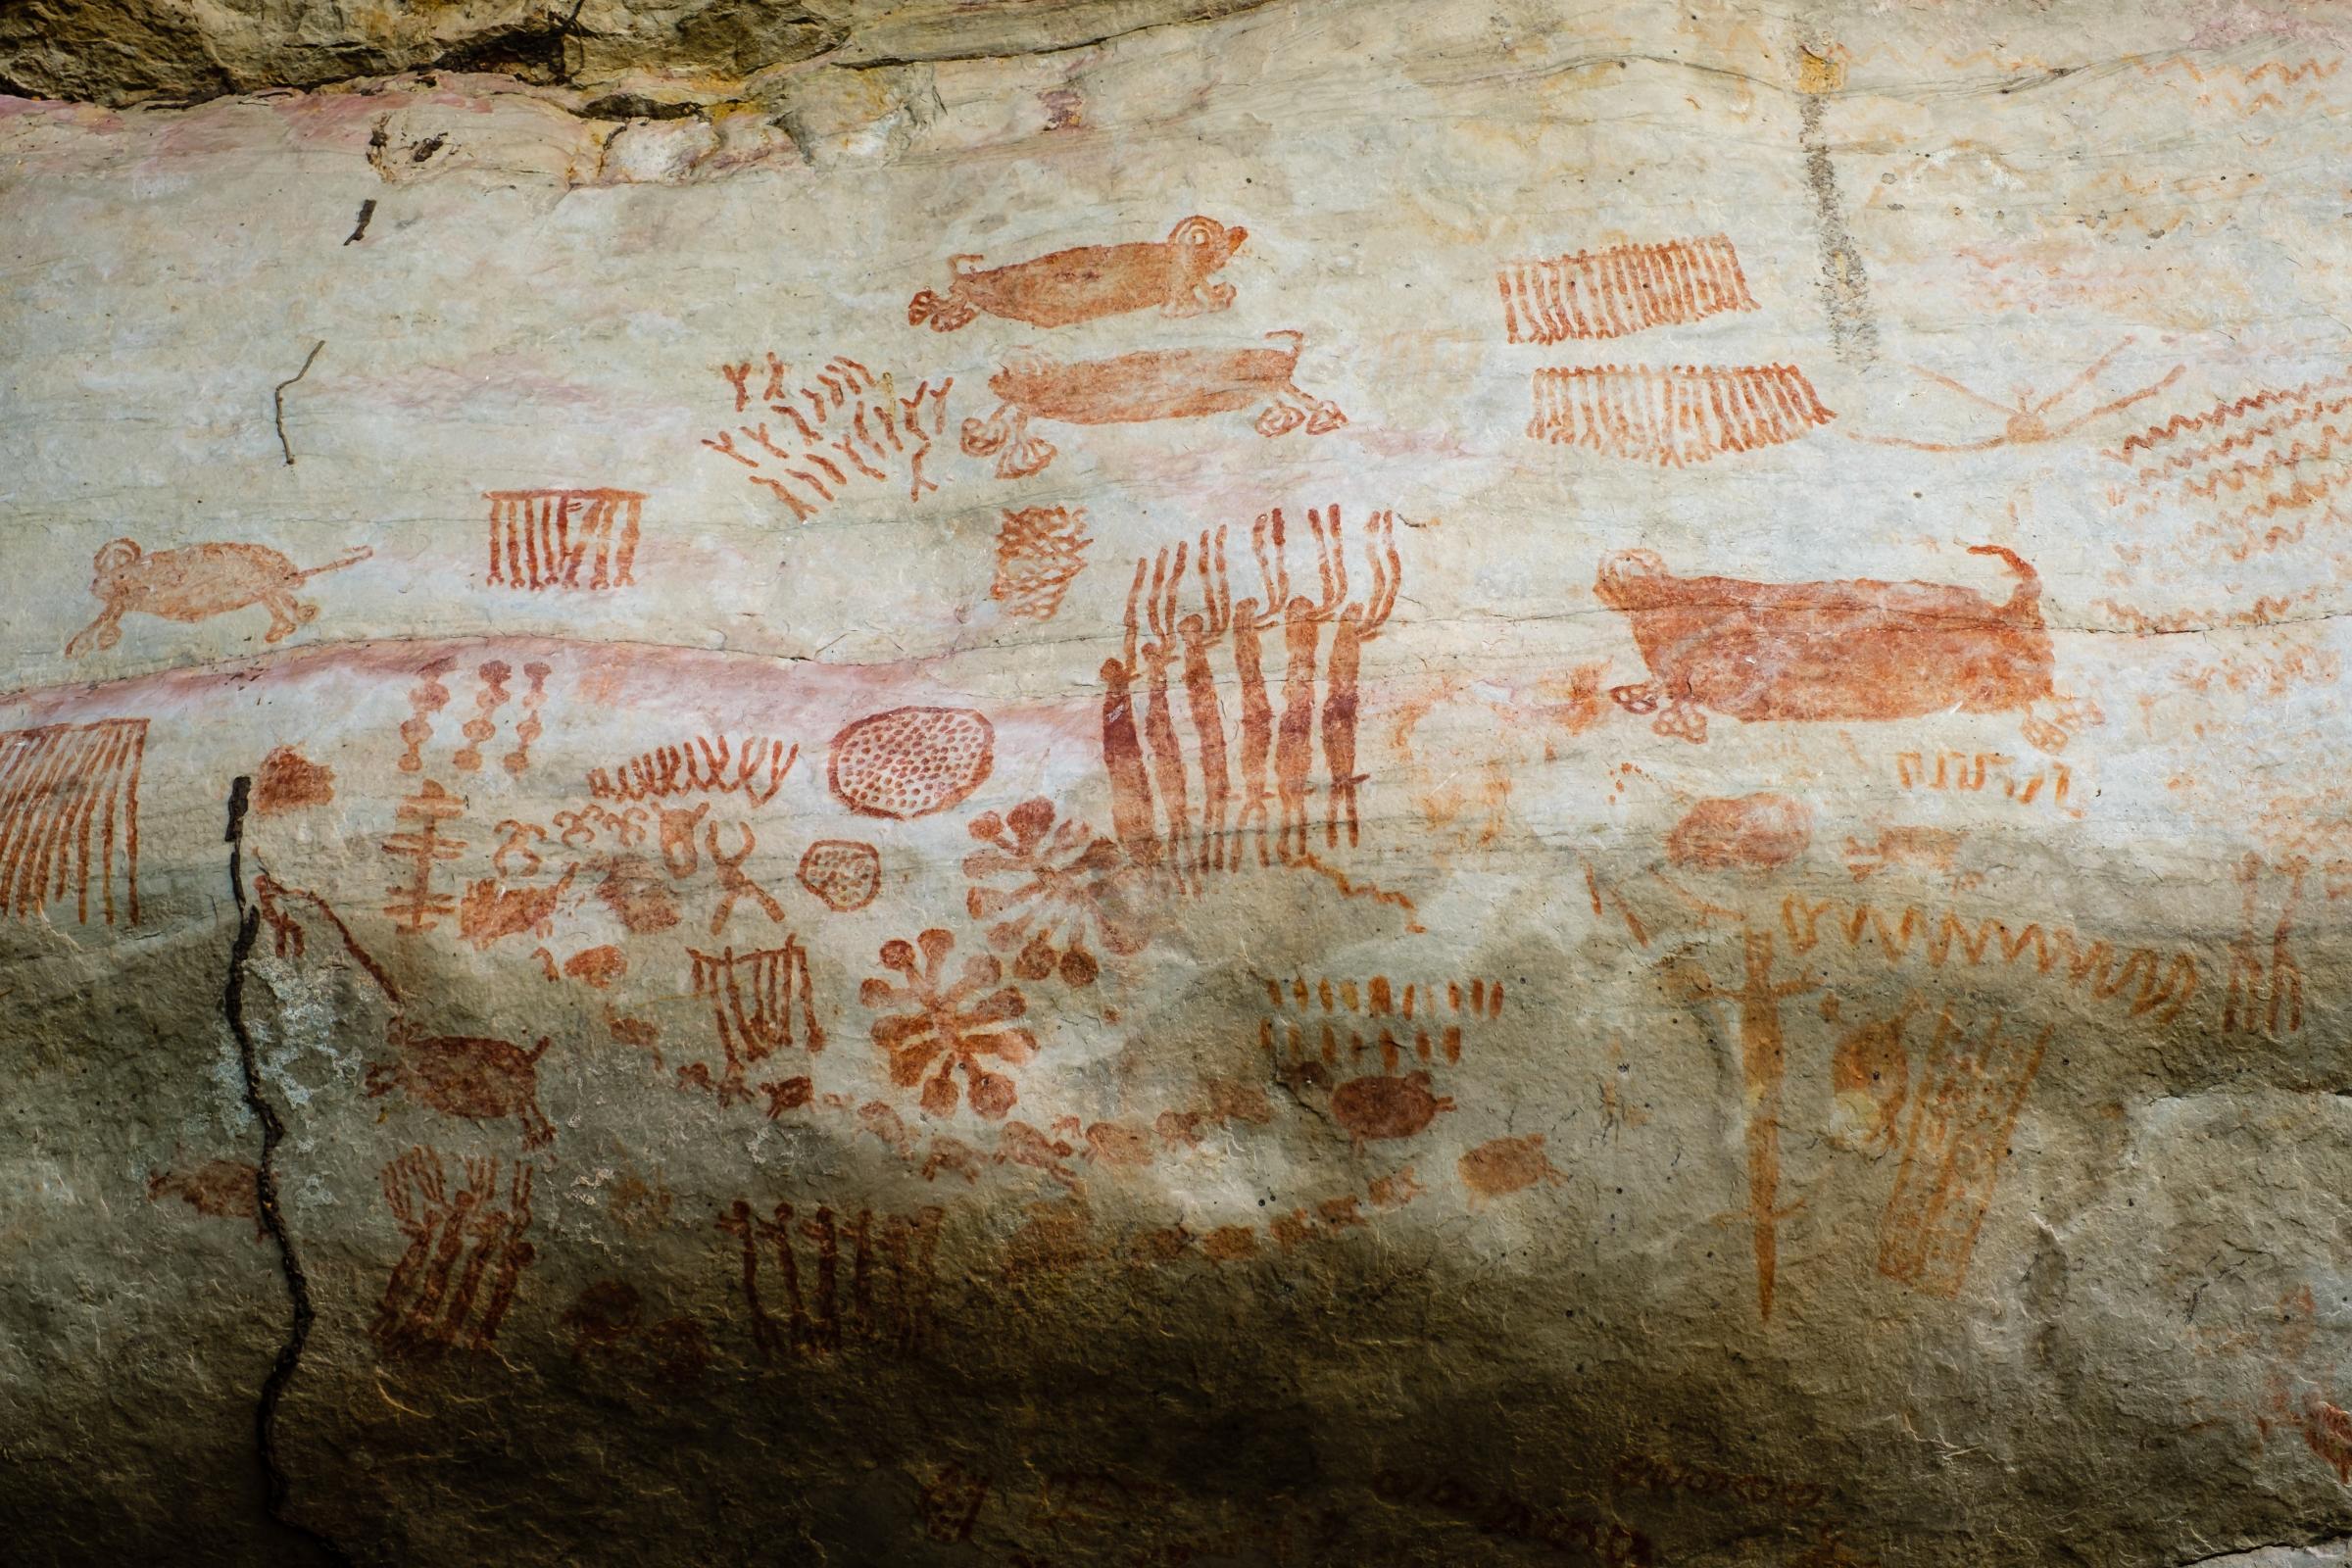 El Guaviare, Cave Paintings and Eco Tourism - Cerro Azul, Gravuras Rupestres. Mata amazonica. Guaviare,...